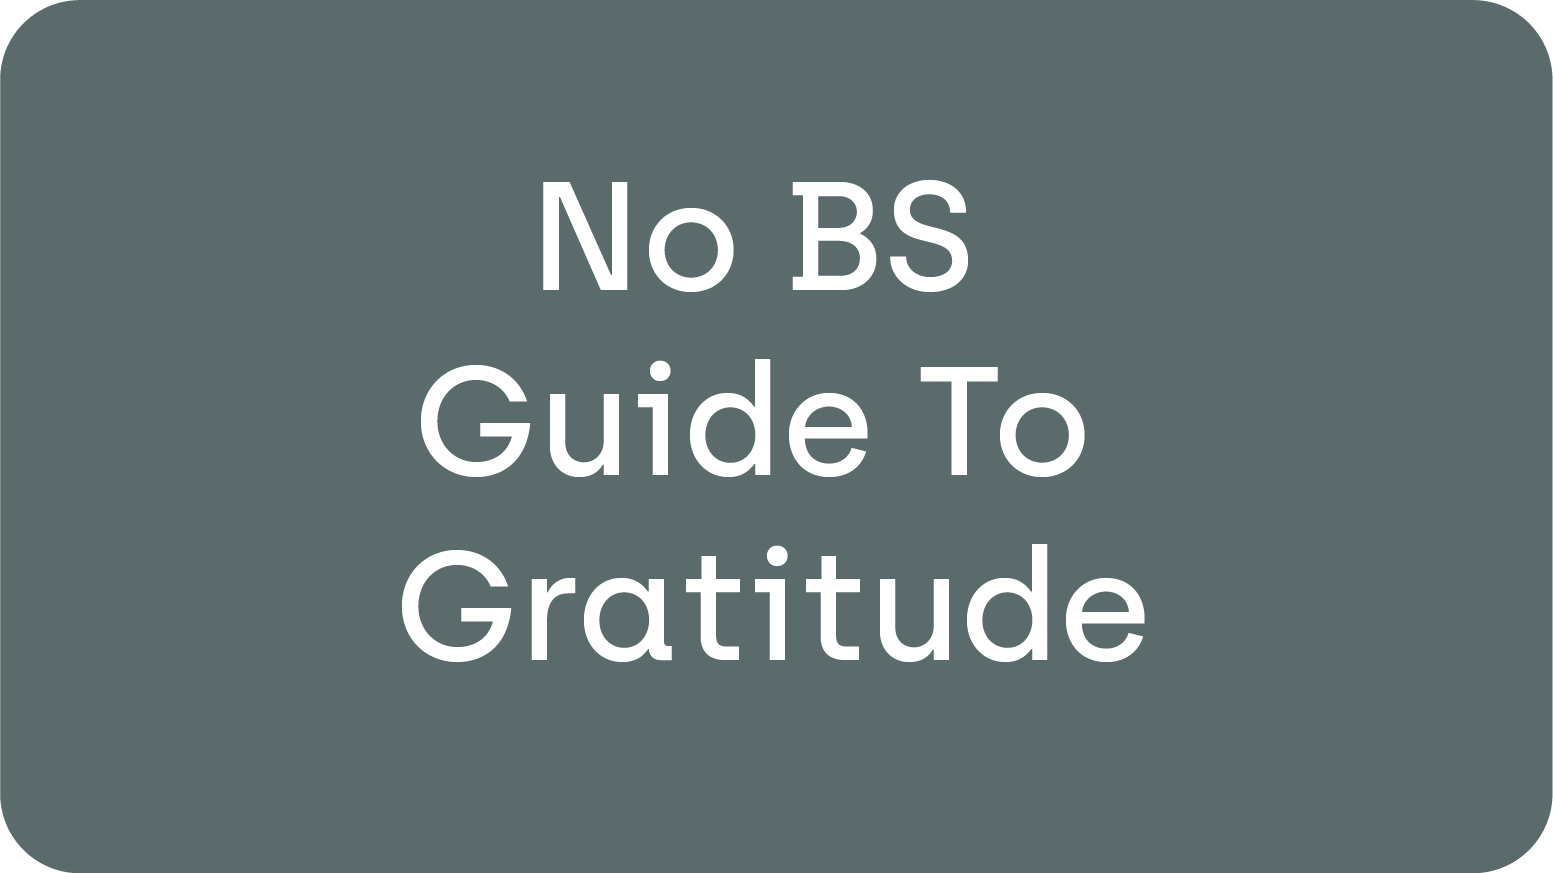 No BS Guide to Gratitude